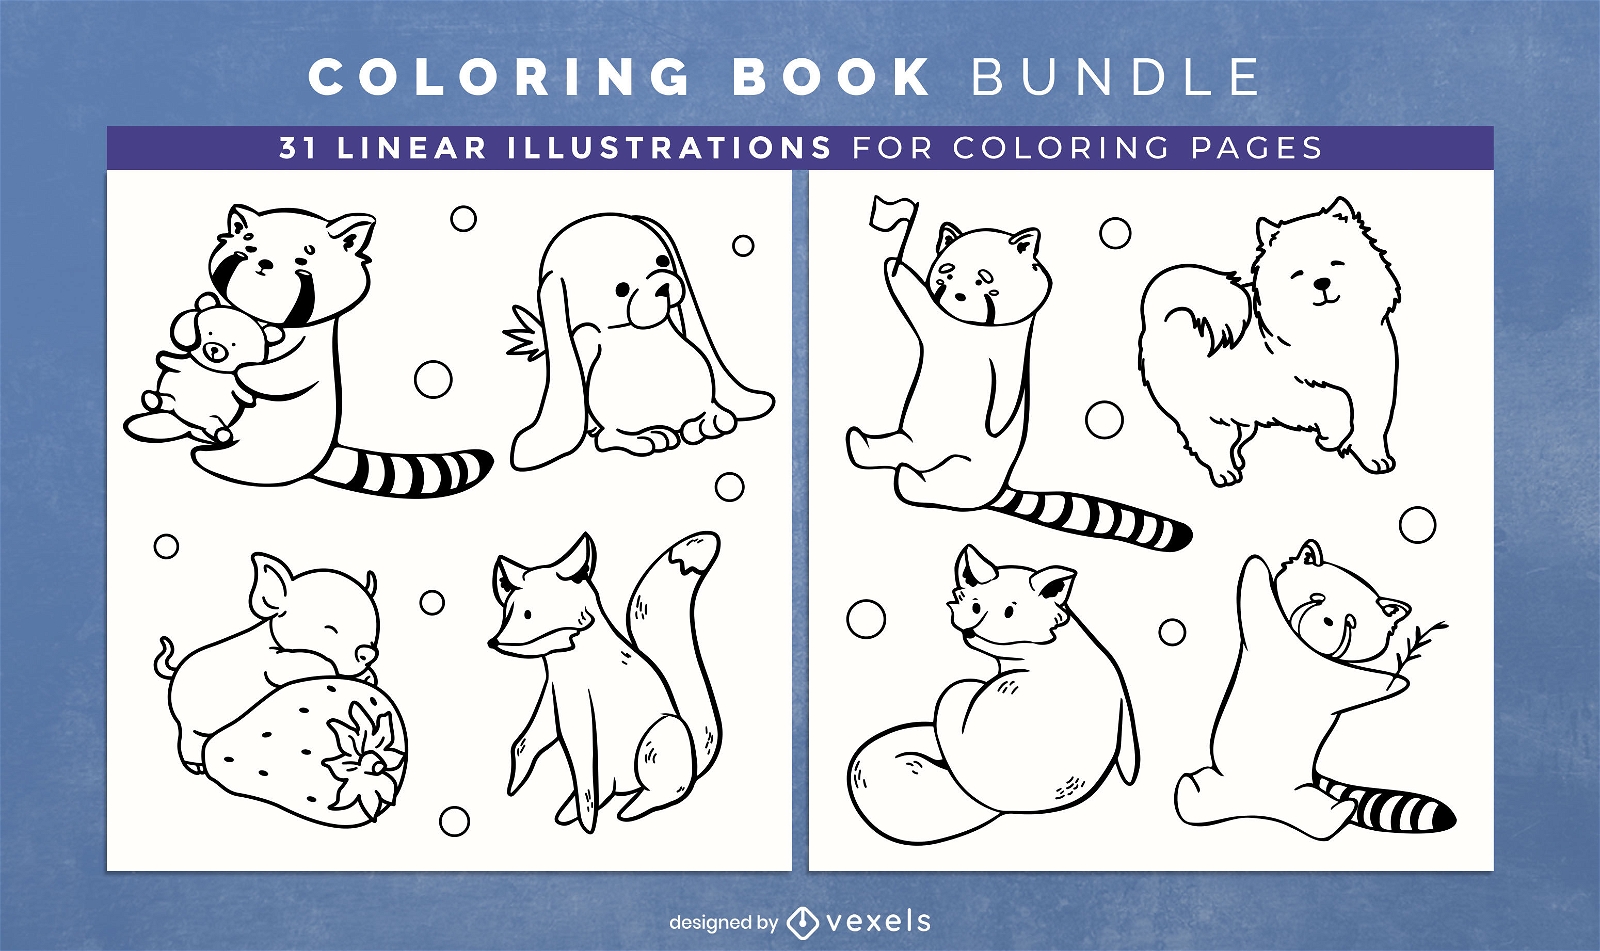 Personajes de animales del bosque para colorear páginas de diseño de libros.